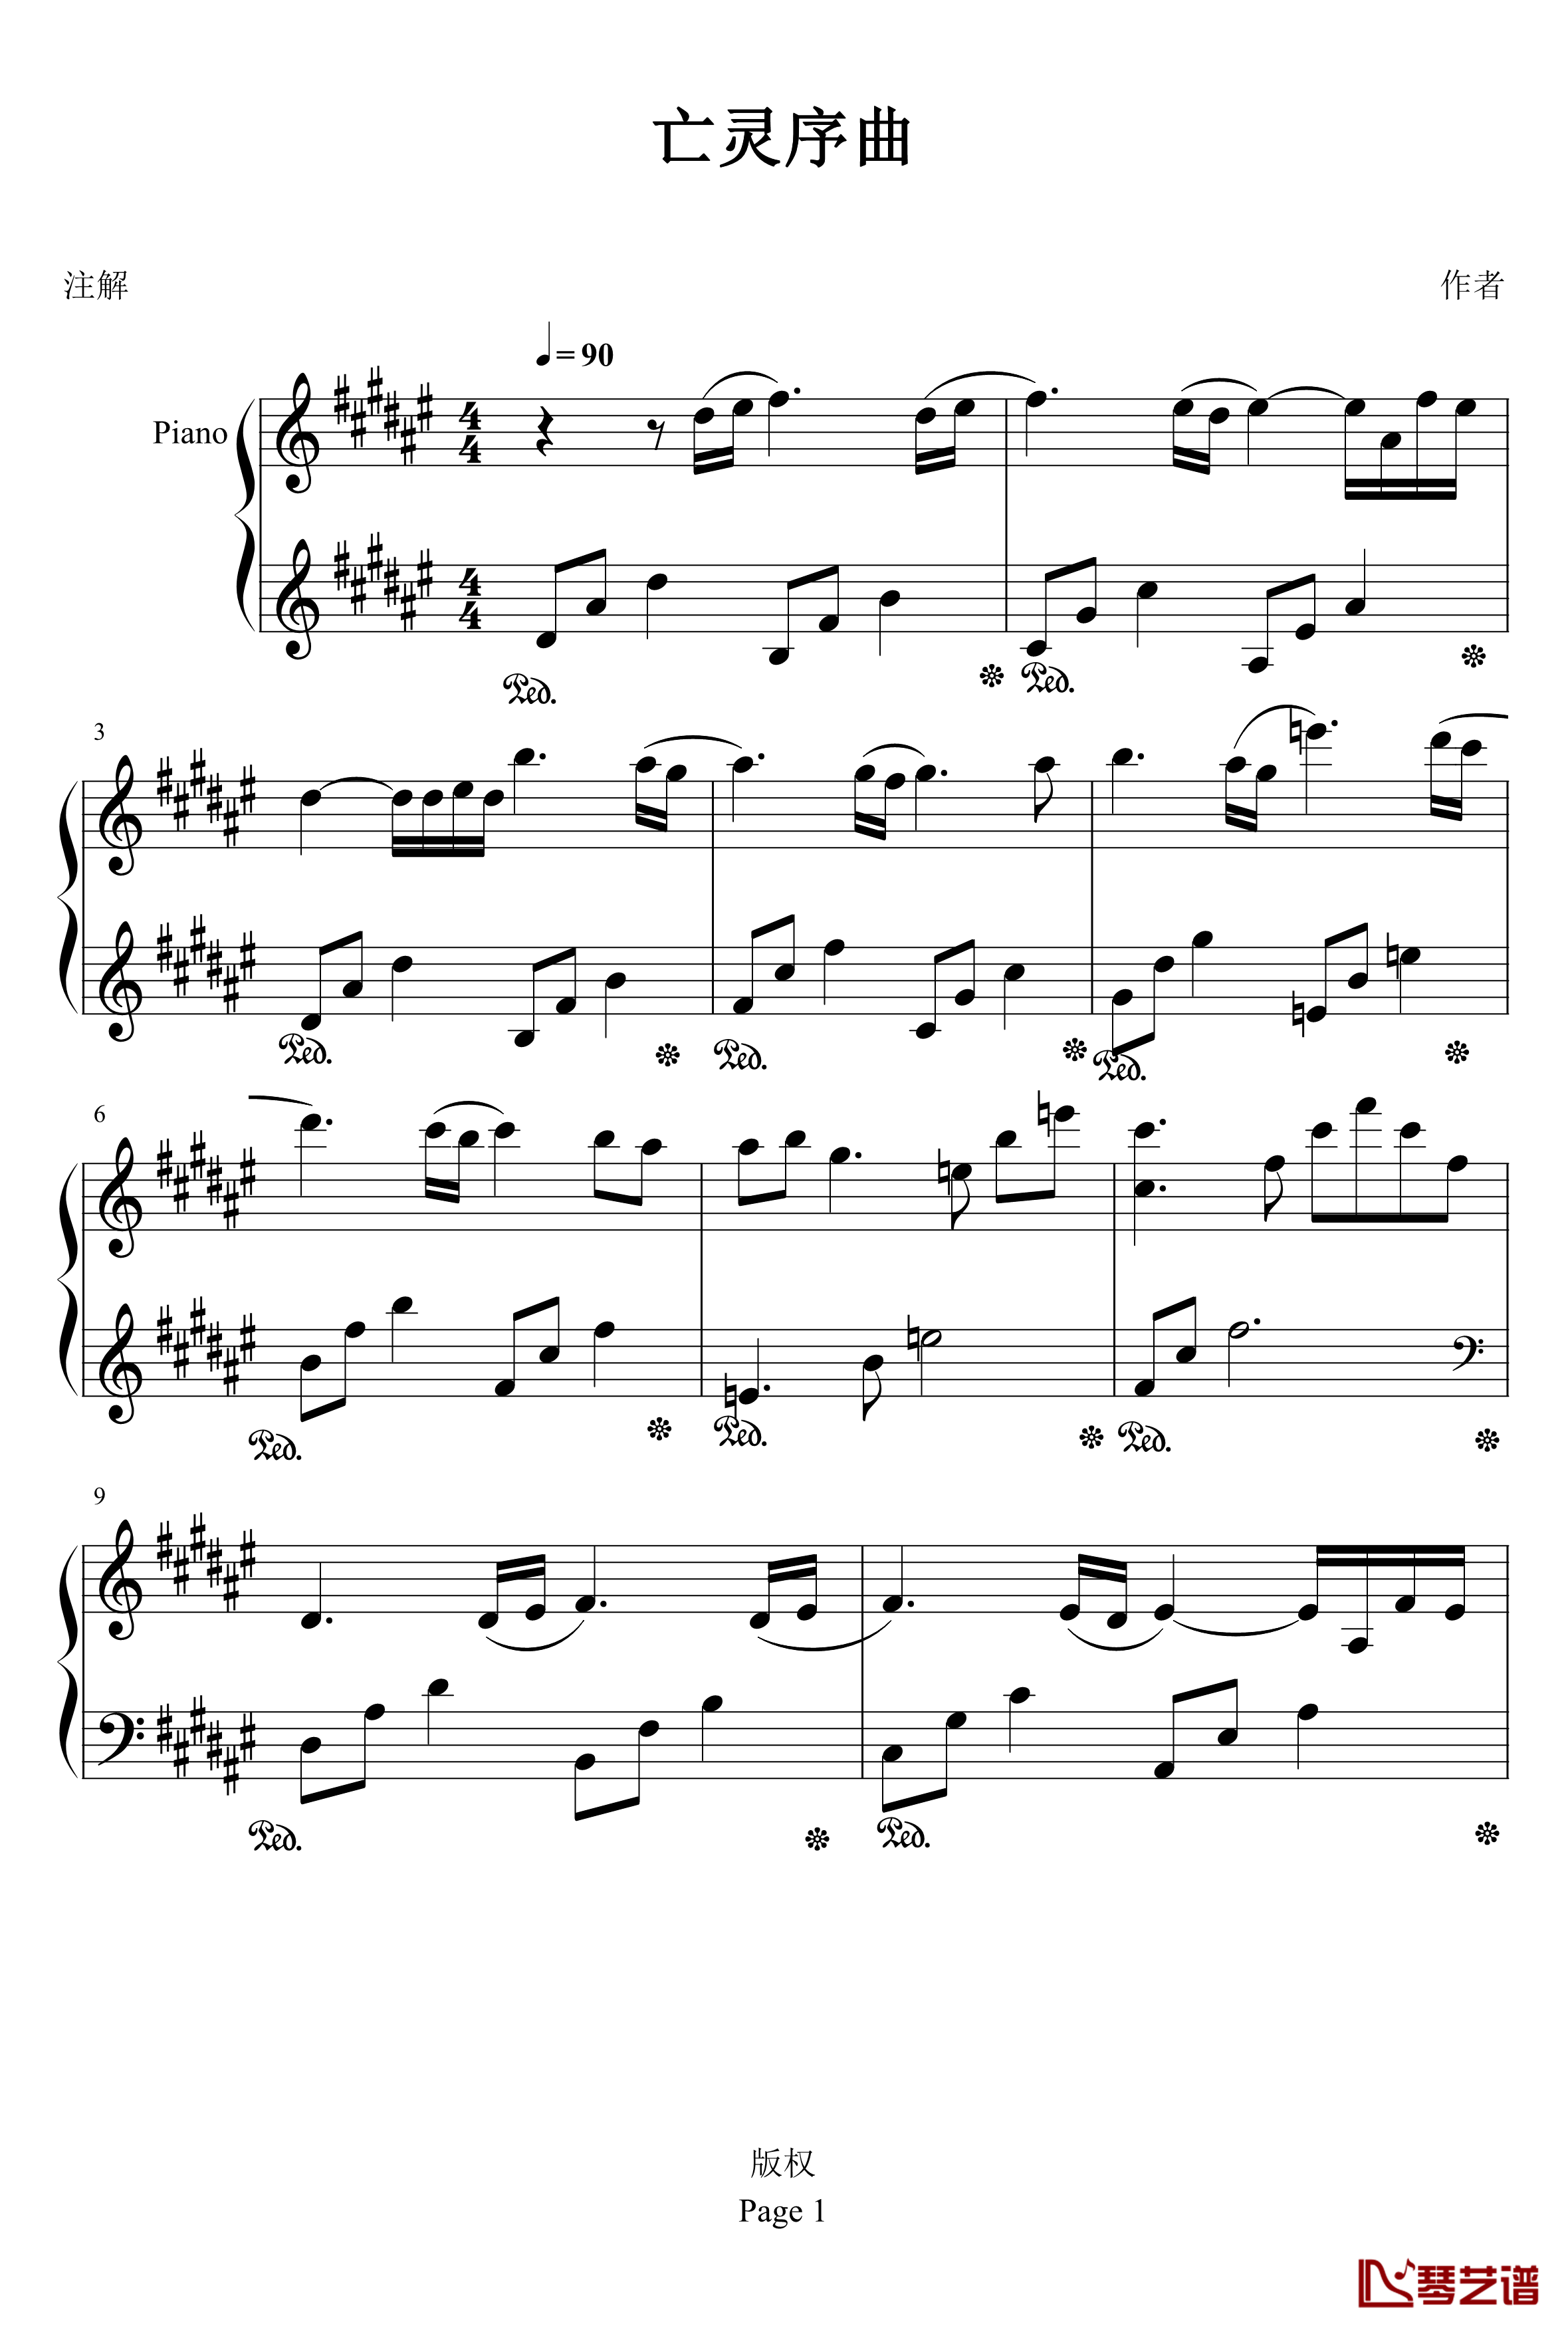 亡灵序曲钢琴谱-完整版-亡灵序曲1